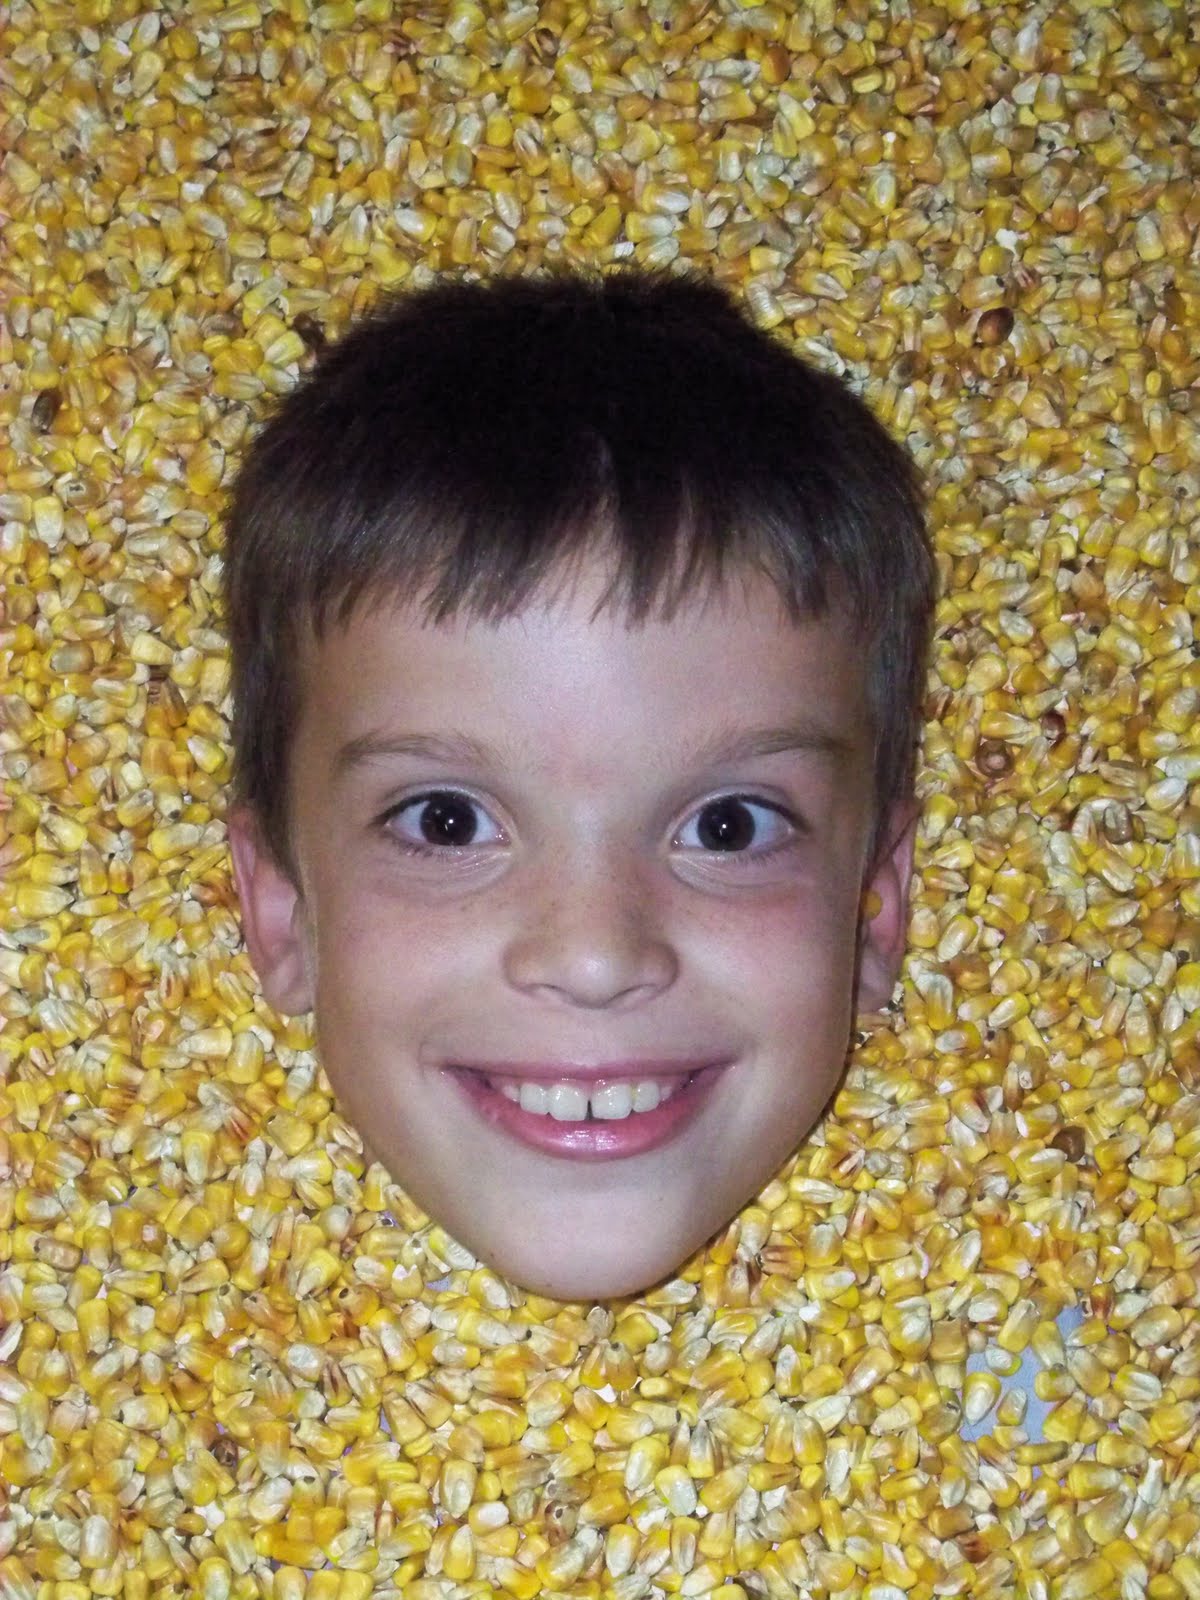 Corn Face